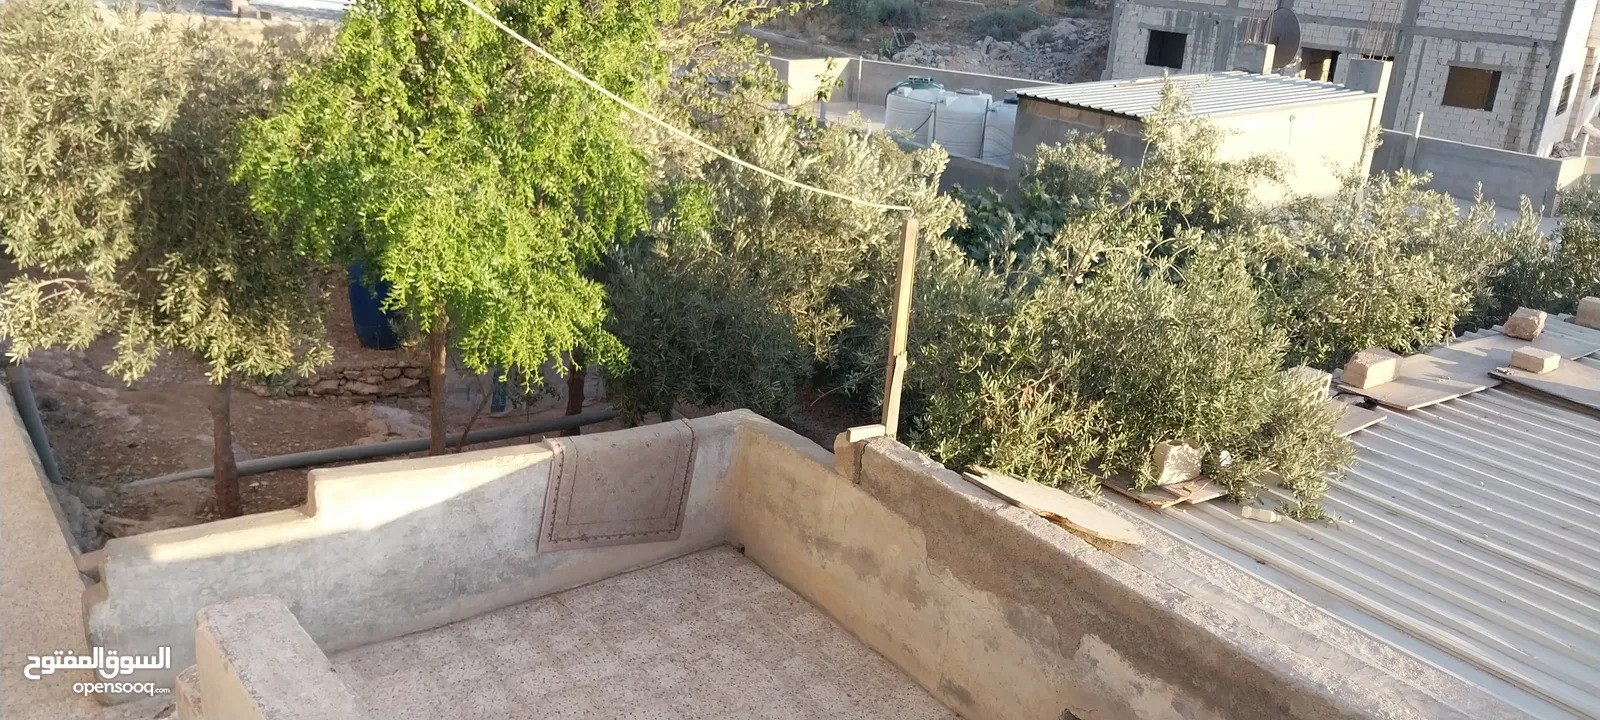 منزل طابقين و مزرعة  للبيع في قرية ابو صياح